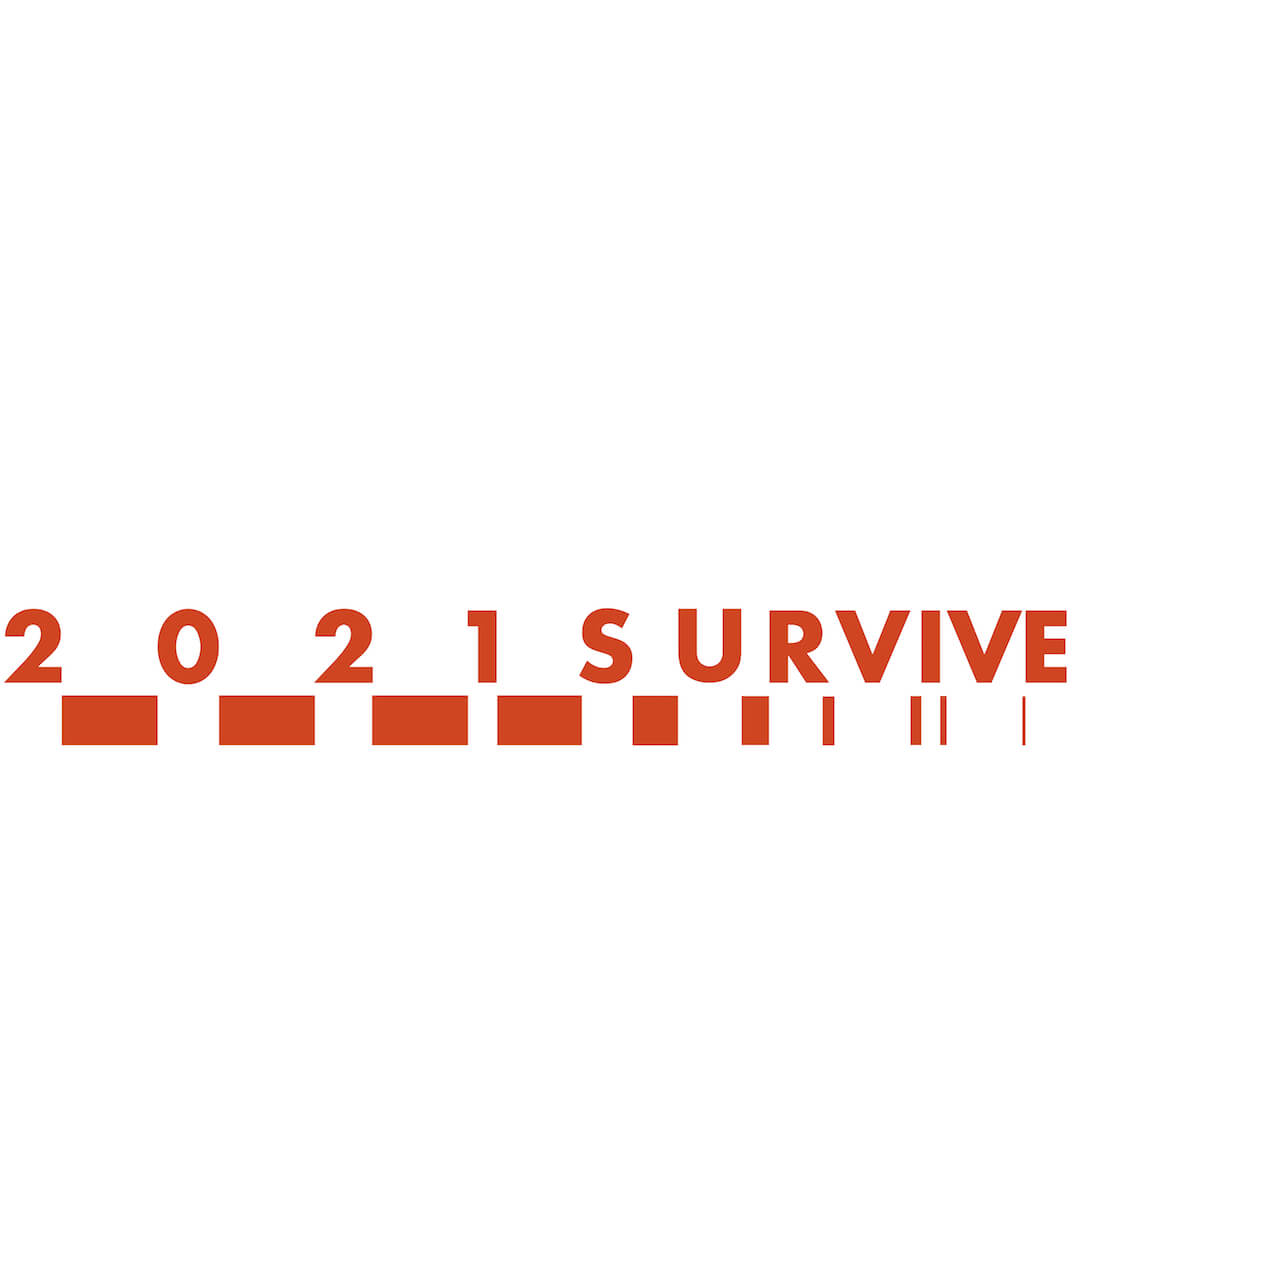 今を生き抜くプロジェクト「2021survive」がコンピレーションアルバムをリリース、売り上げはforestlimitへ music200513-2021survive-1